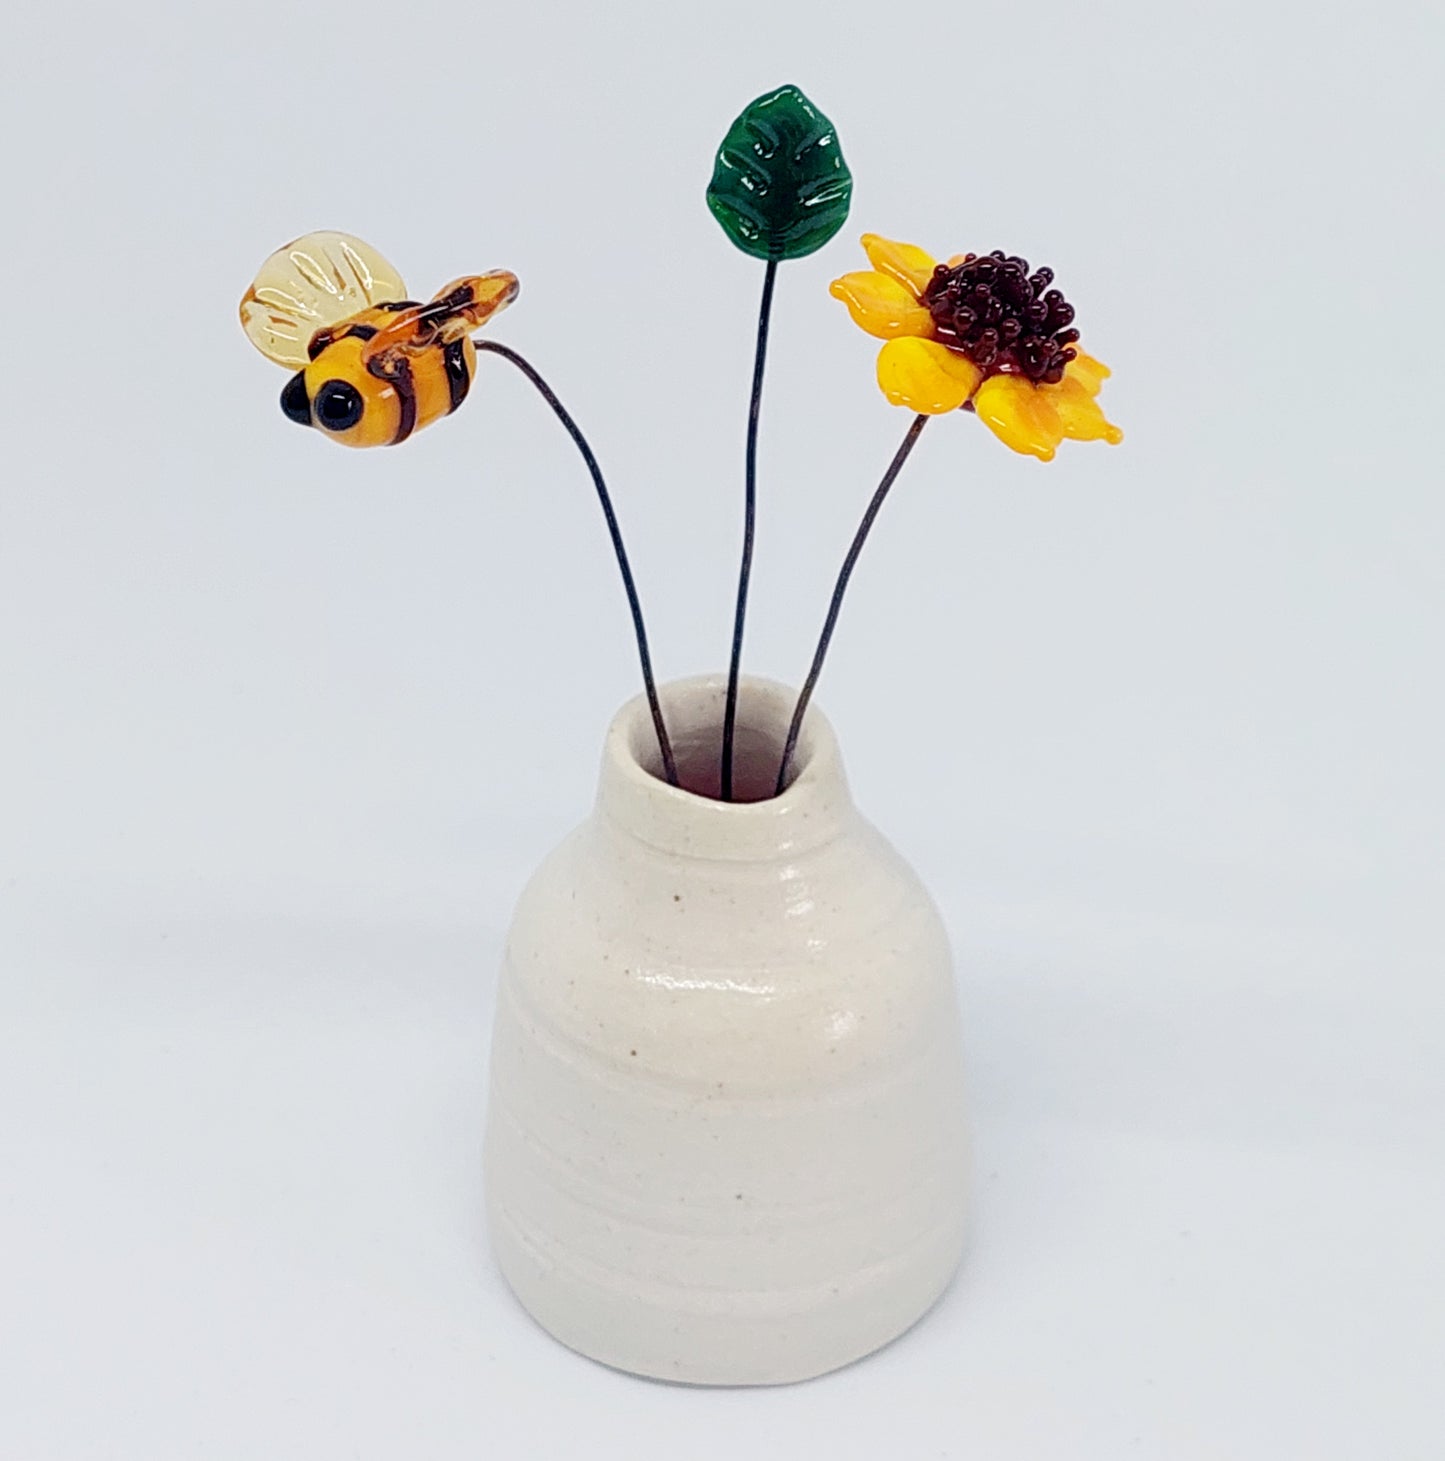 NEW!! Glass Art - Multiflora Bouquet